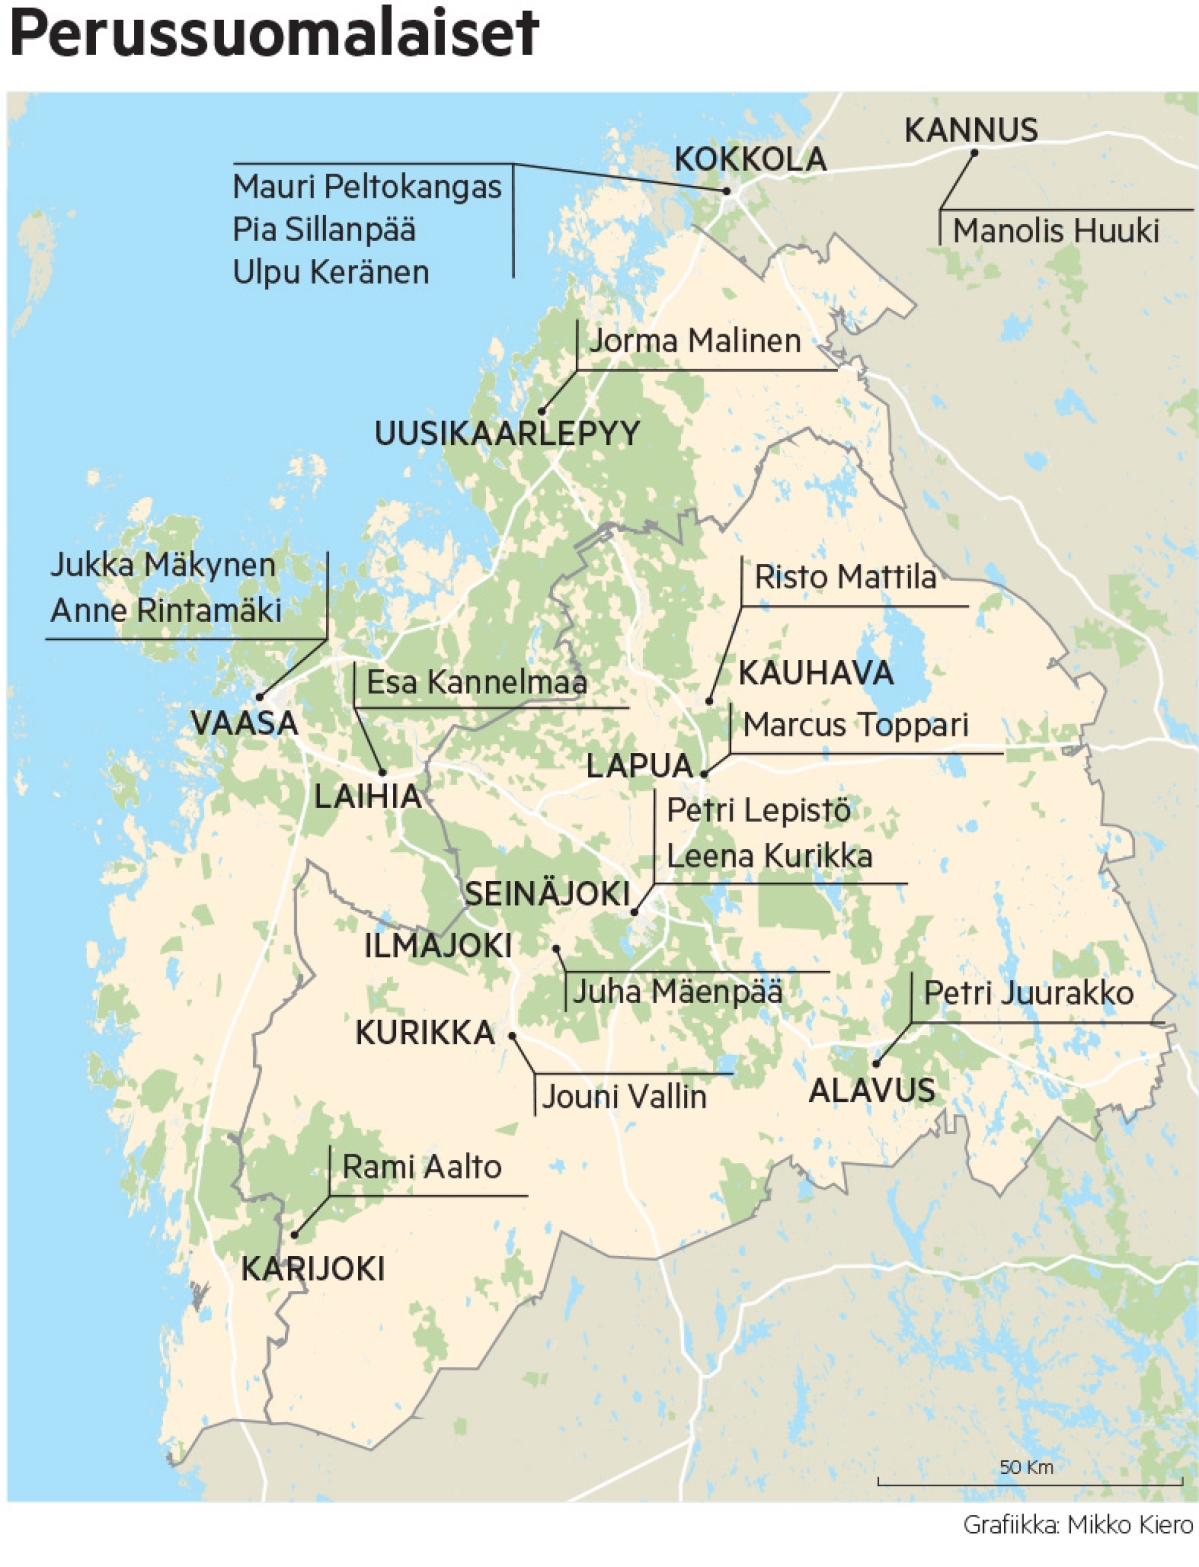 Eduskuntavaalien perussuomalaiset ehdokkaat kartalla. 